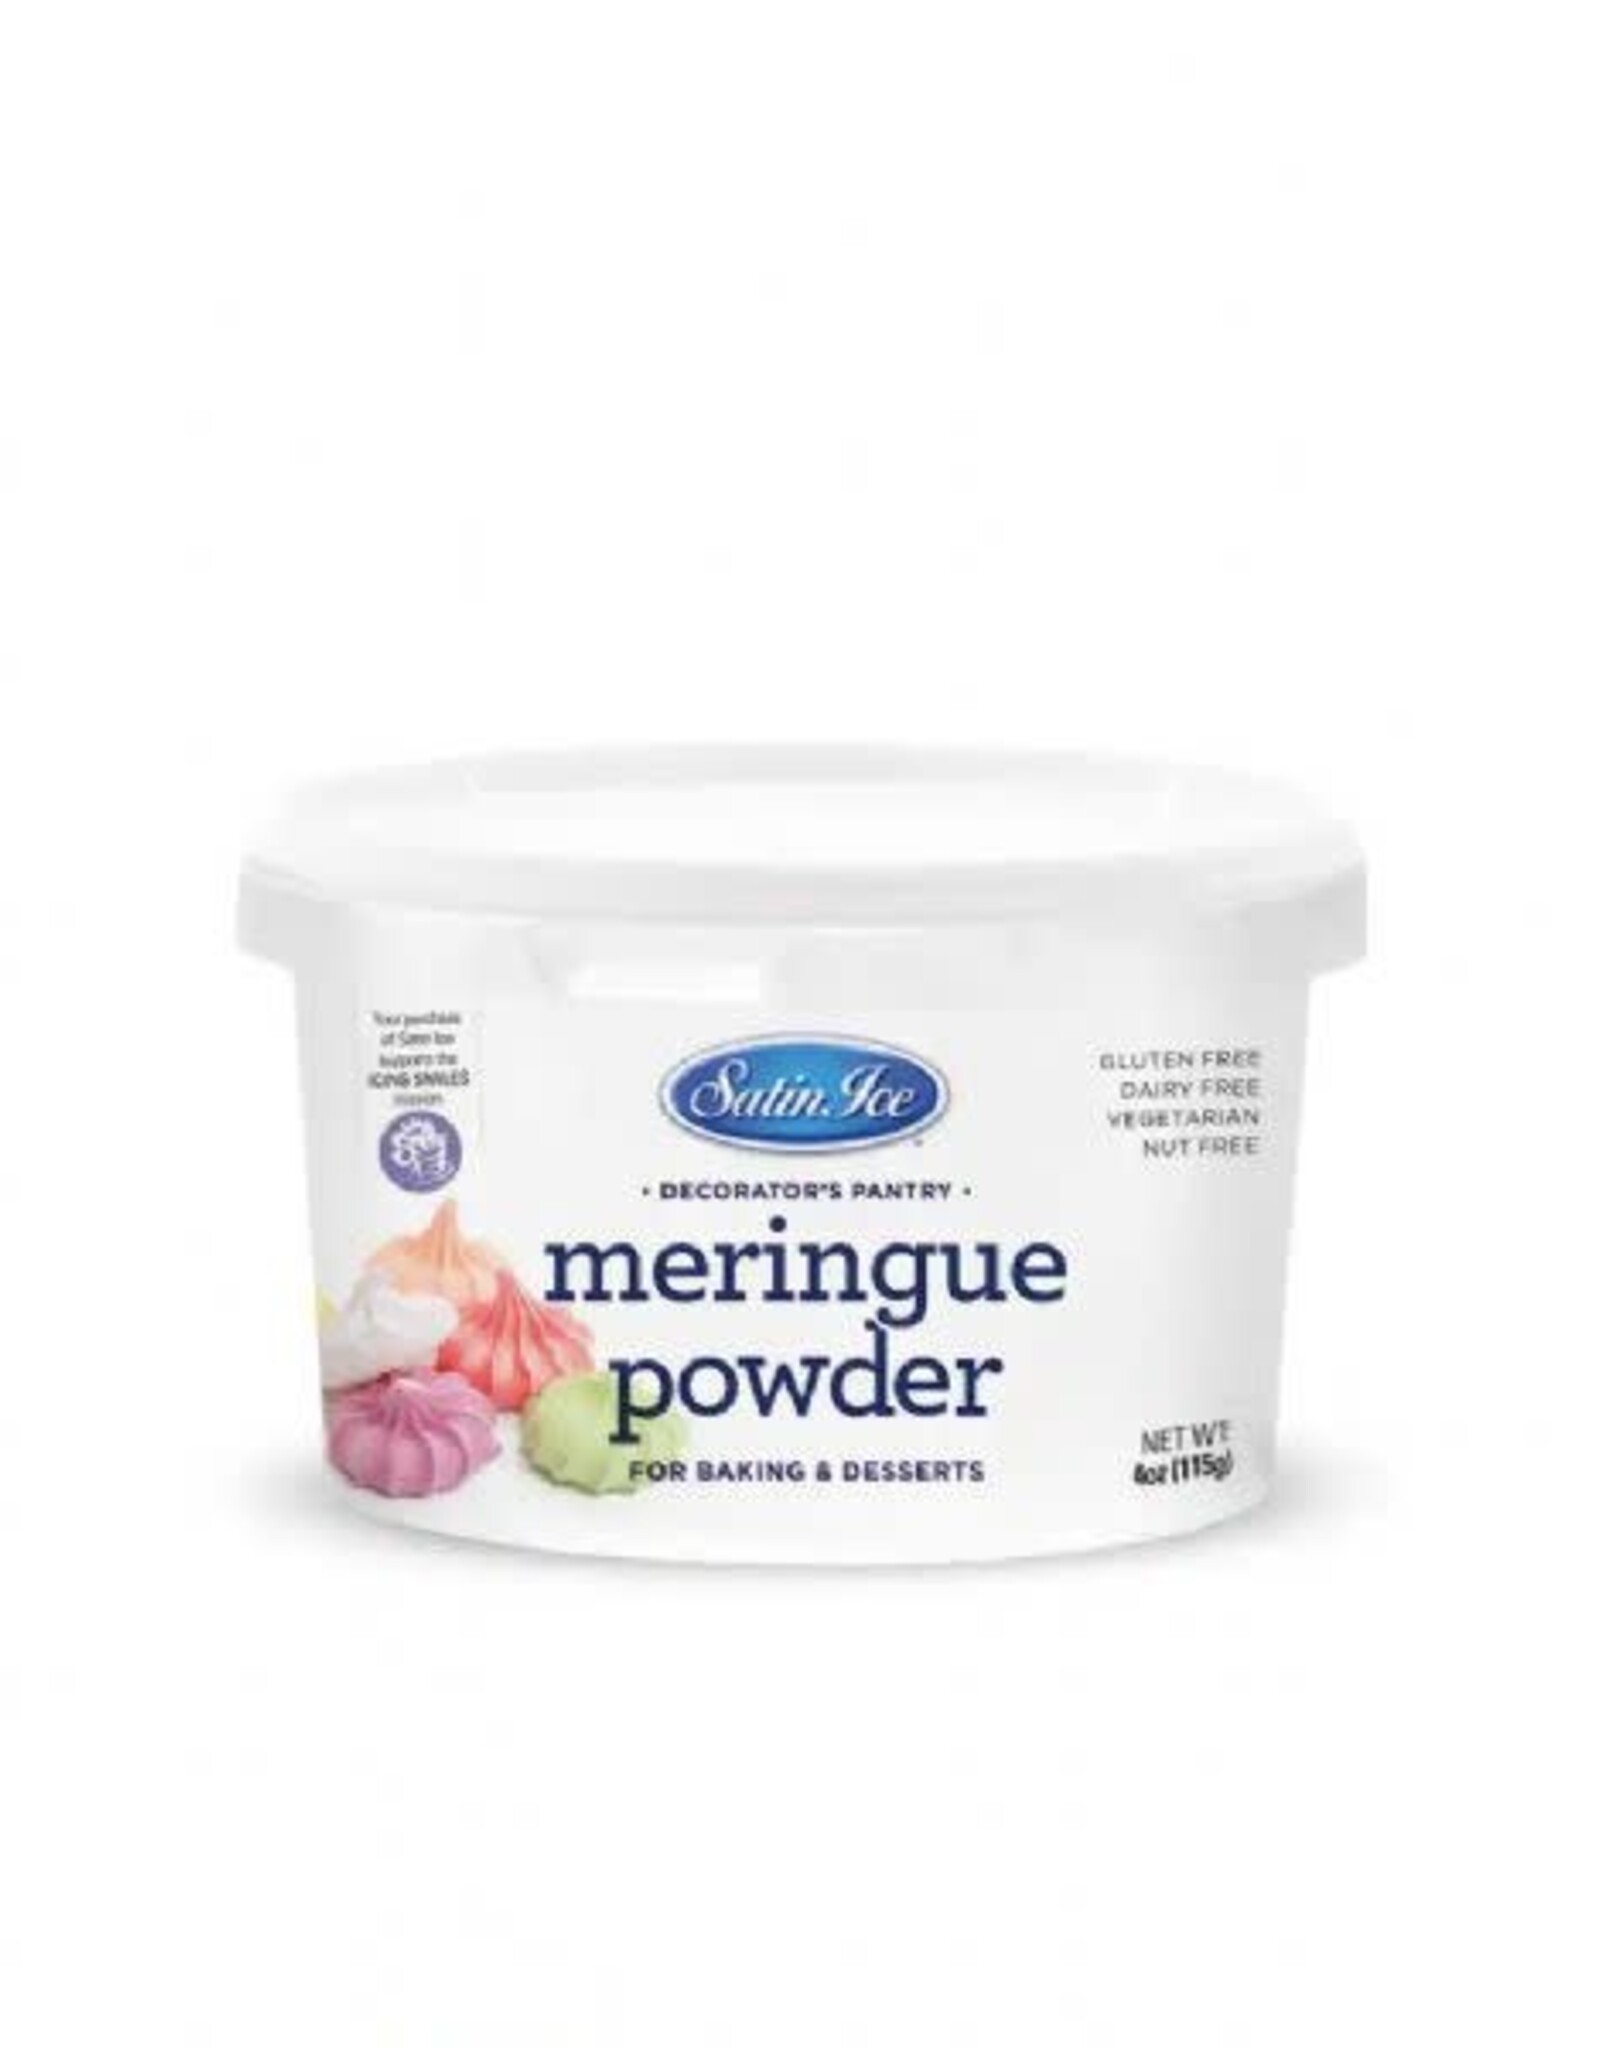 Meringue Powder 4oz.